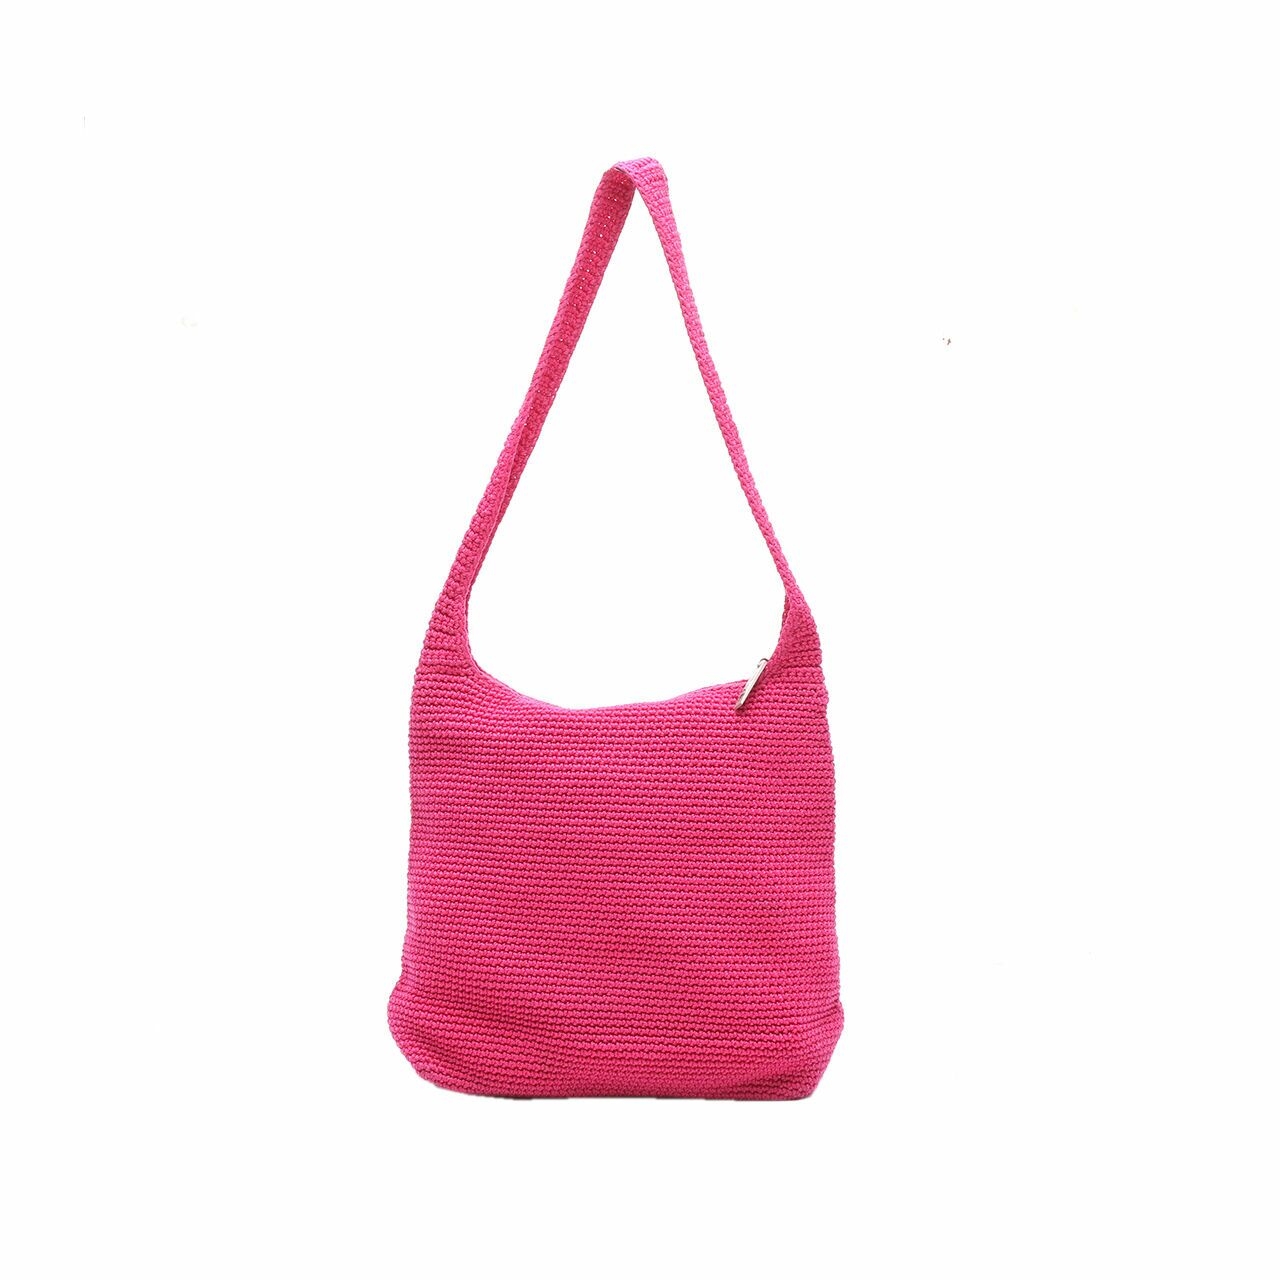 The Sak Pink Shoulder Bag